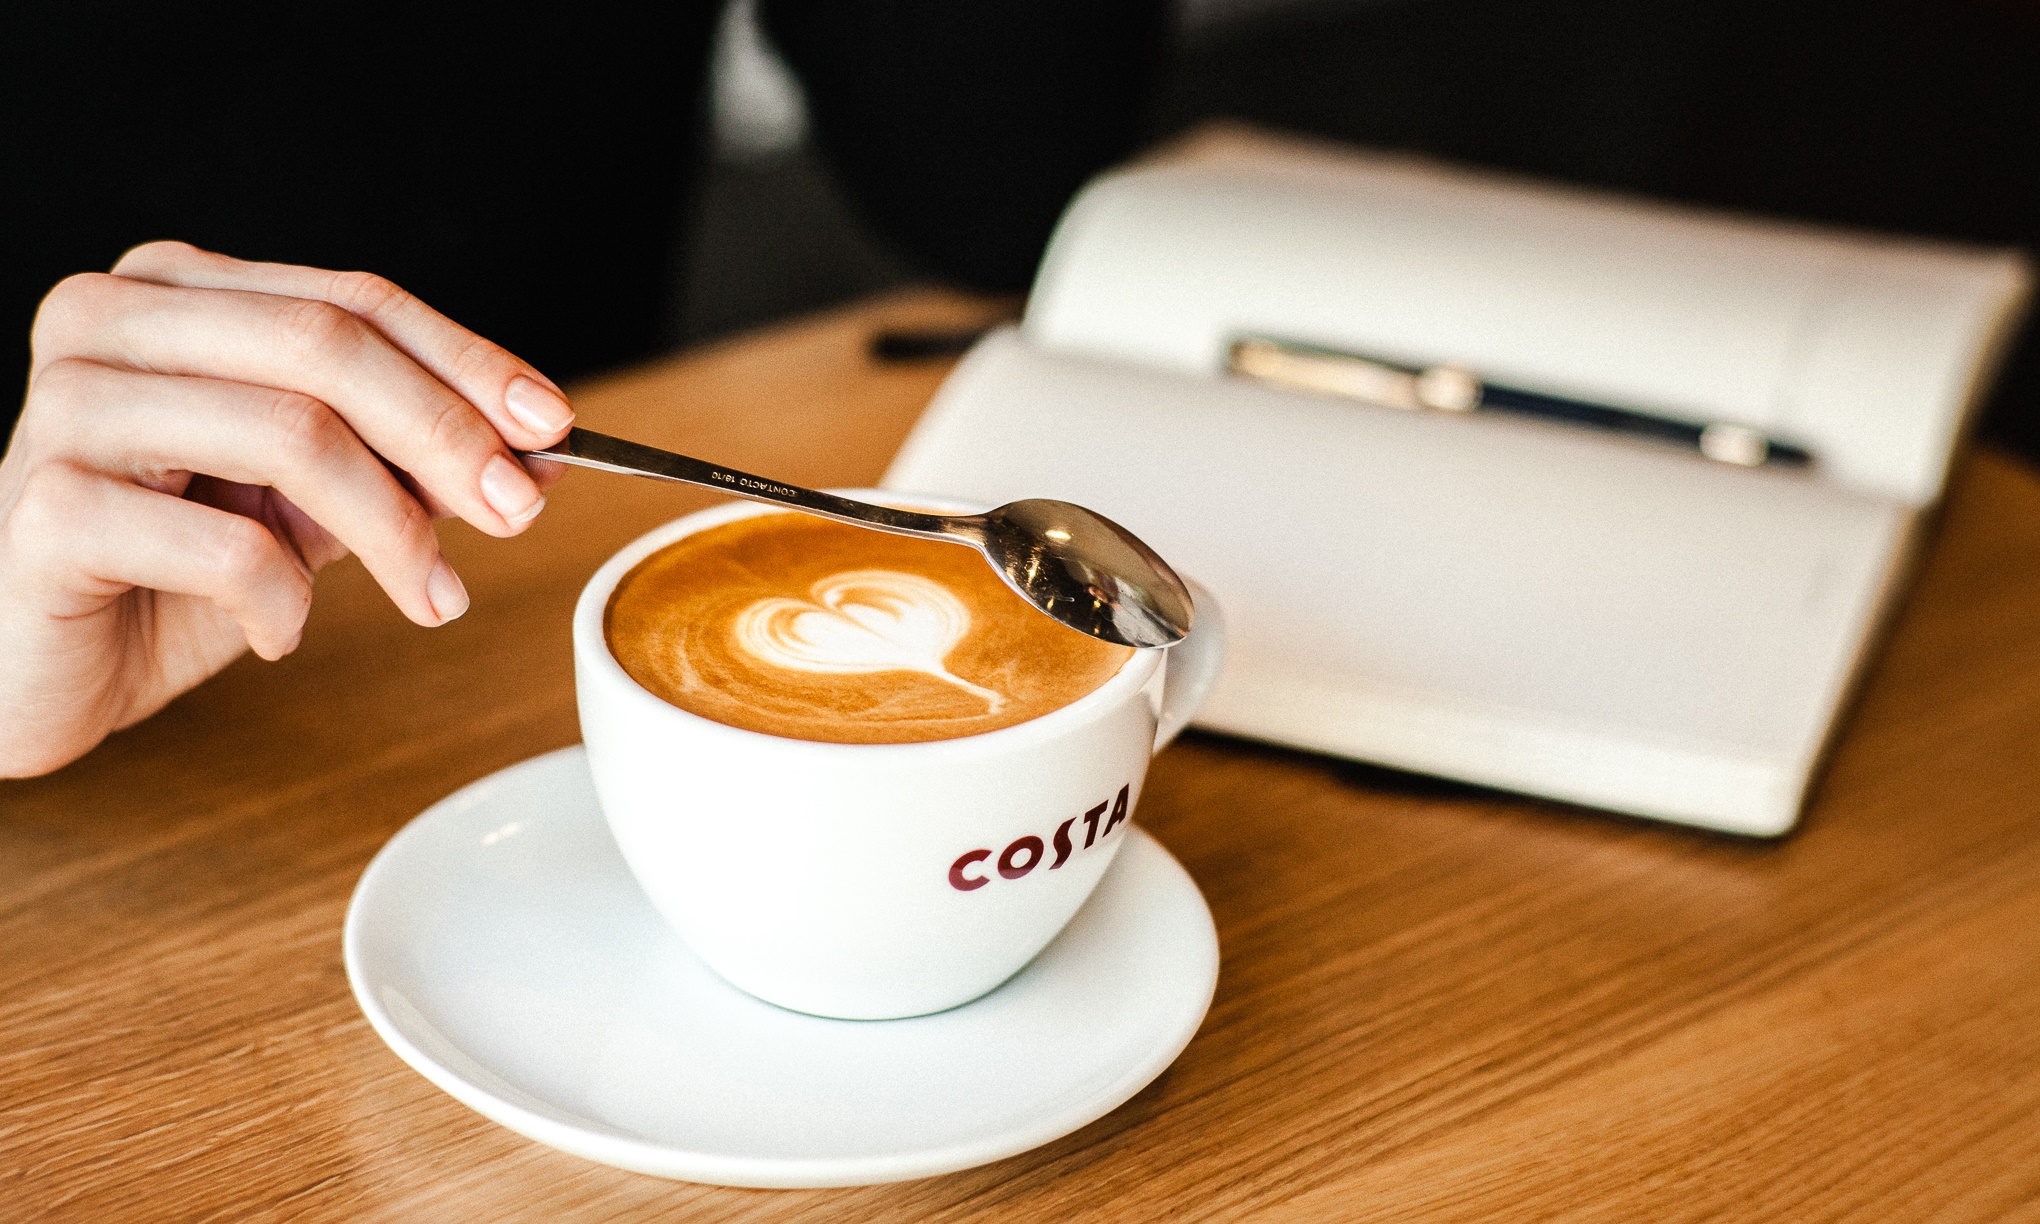 Nietypowa współpraca COSTA COFFEE Prószyński i S-ka Costa Coffee Zaczytaj się do ostatniej kropli crop